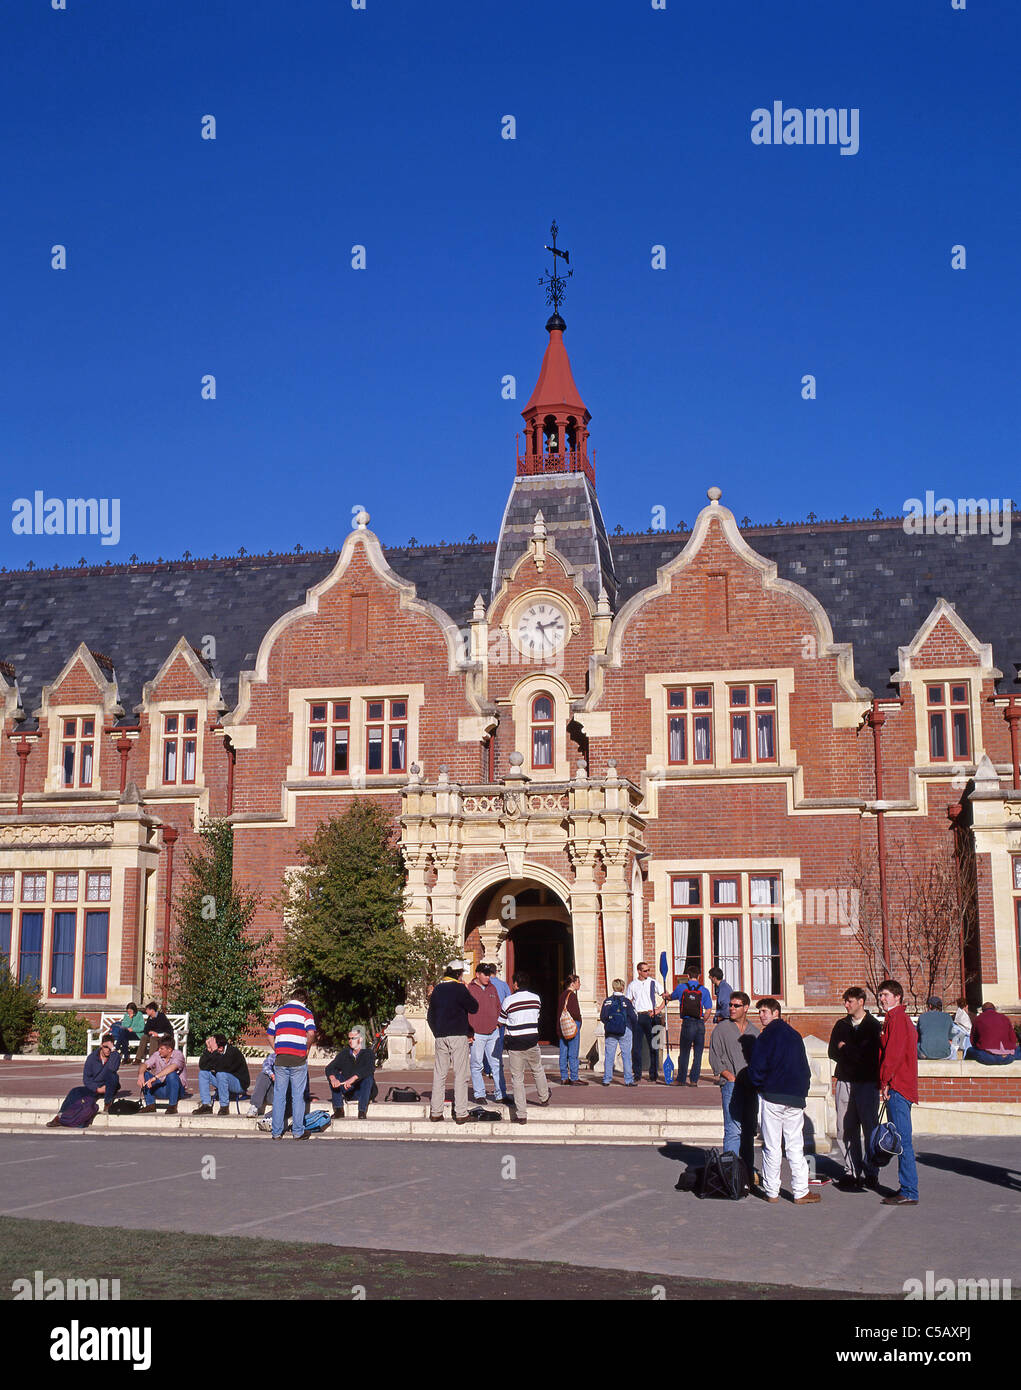 La bibliothèque de l'Université de Lincoln, Lincoln University, Lincoln, près de Christchurch, Canterbury, île du Sud, Nouvelle-Zélande Banque D'Images